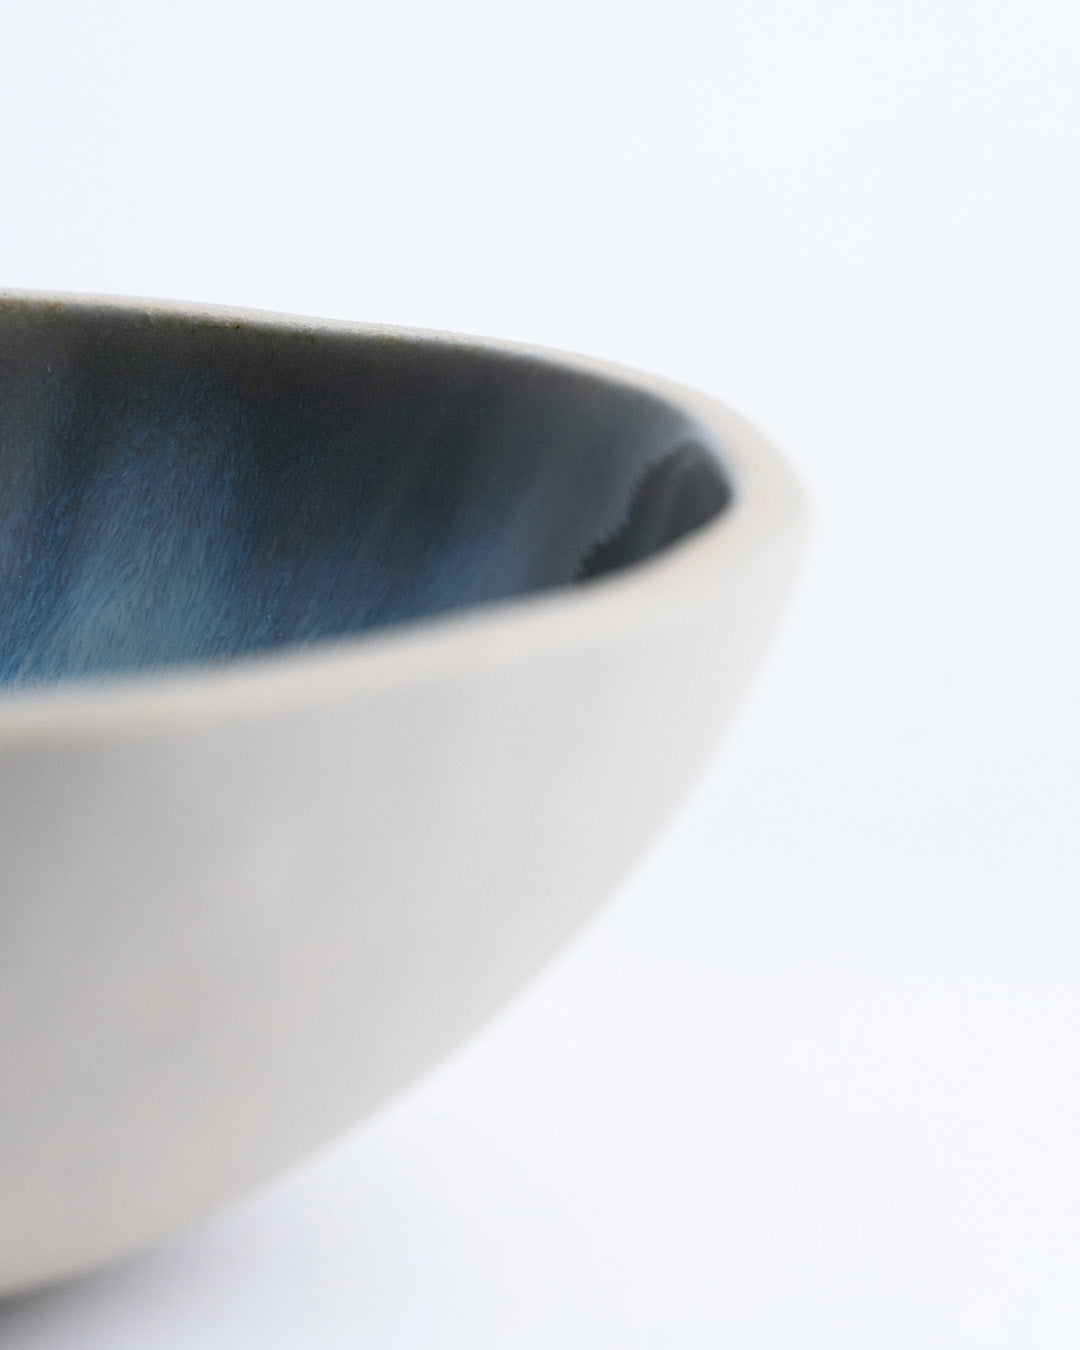 Iridescent Round Irregular Bowl - Goki Ceramique